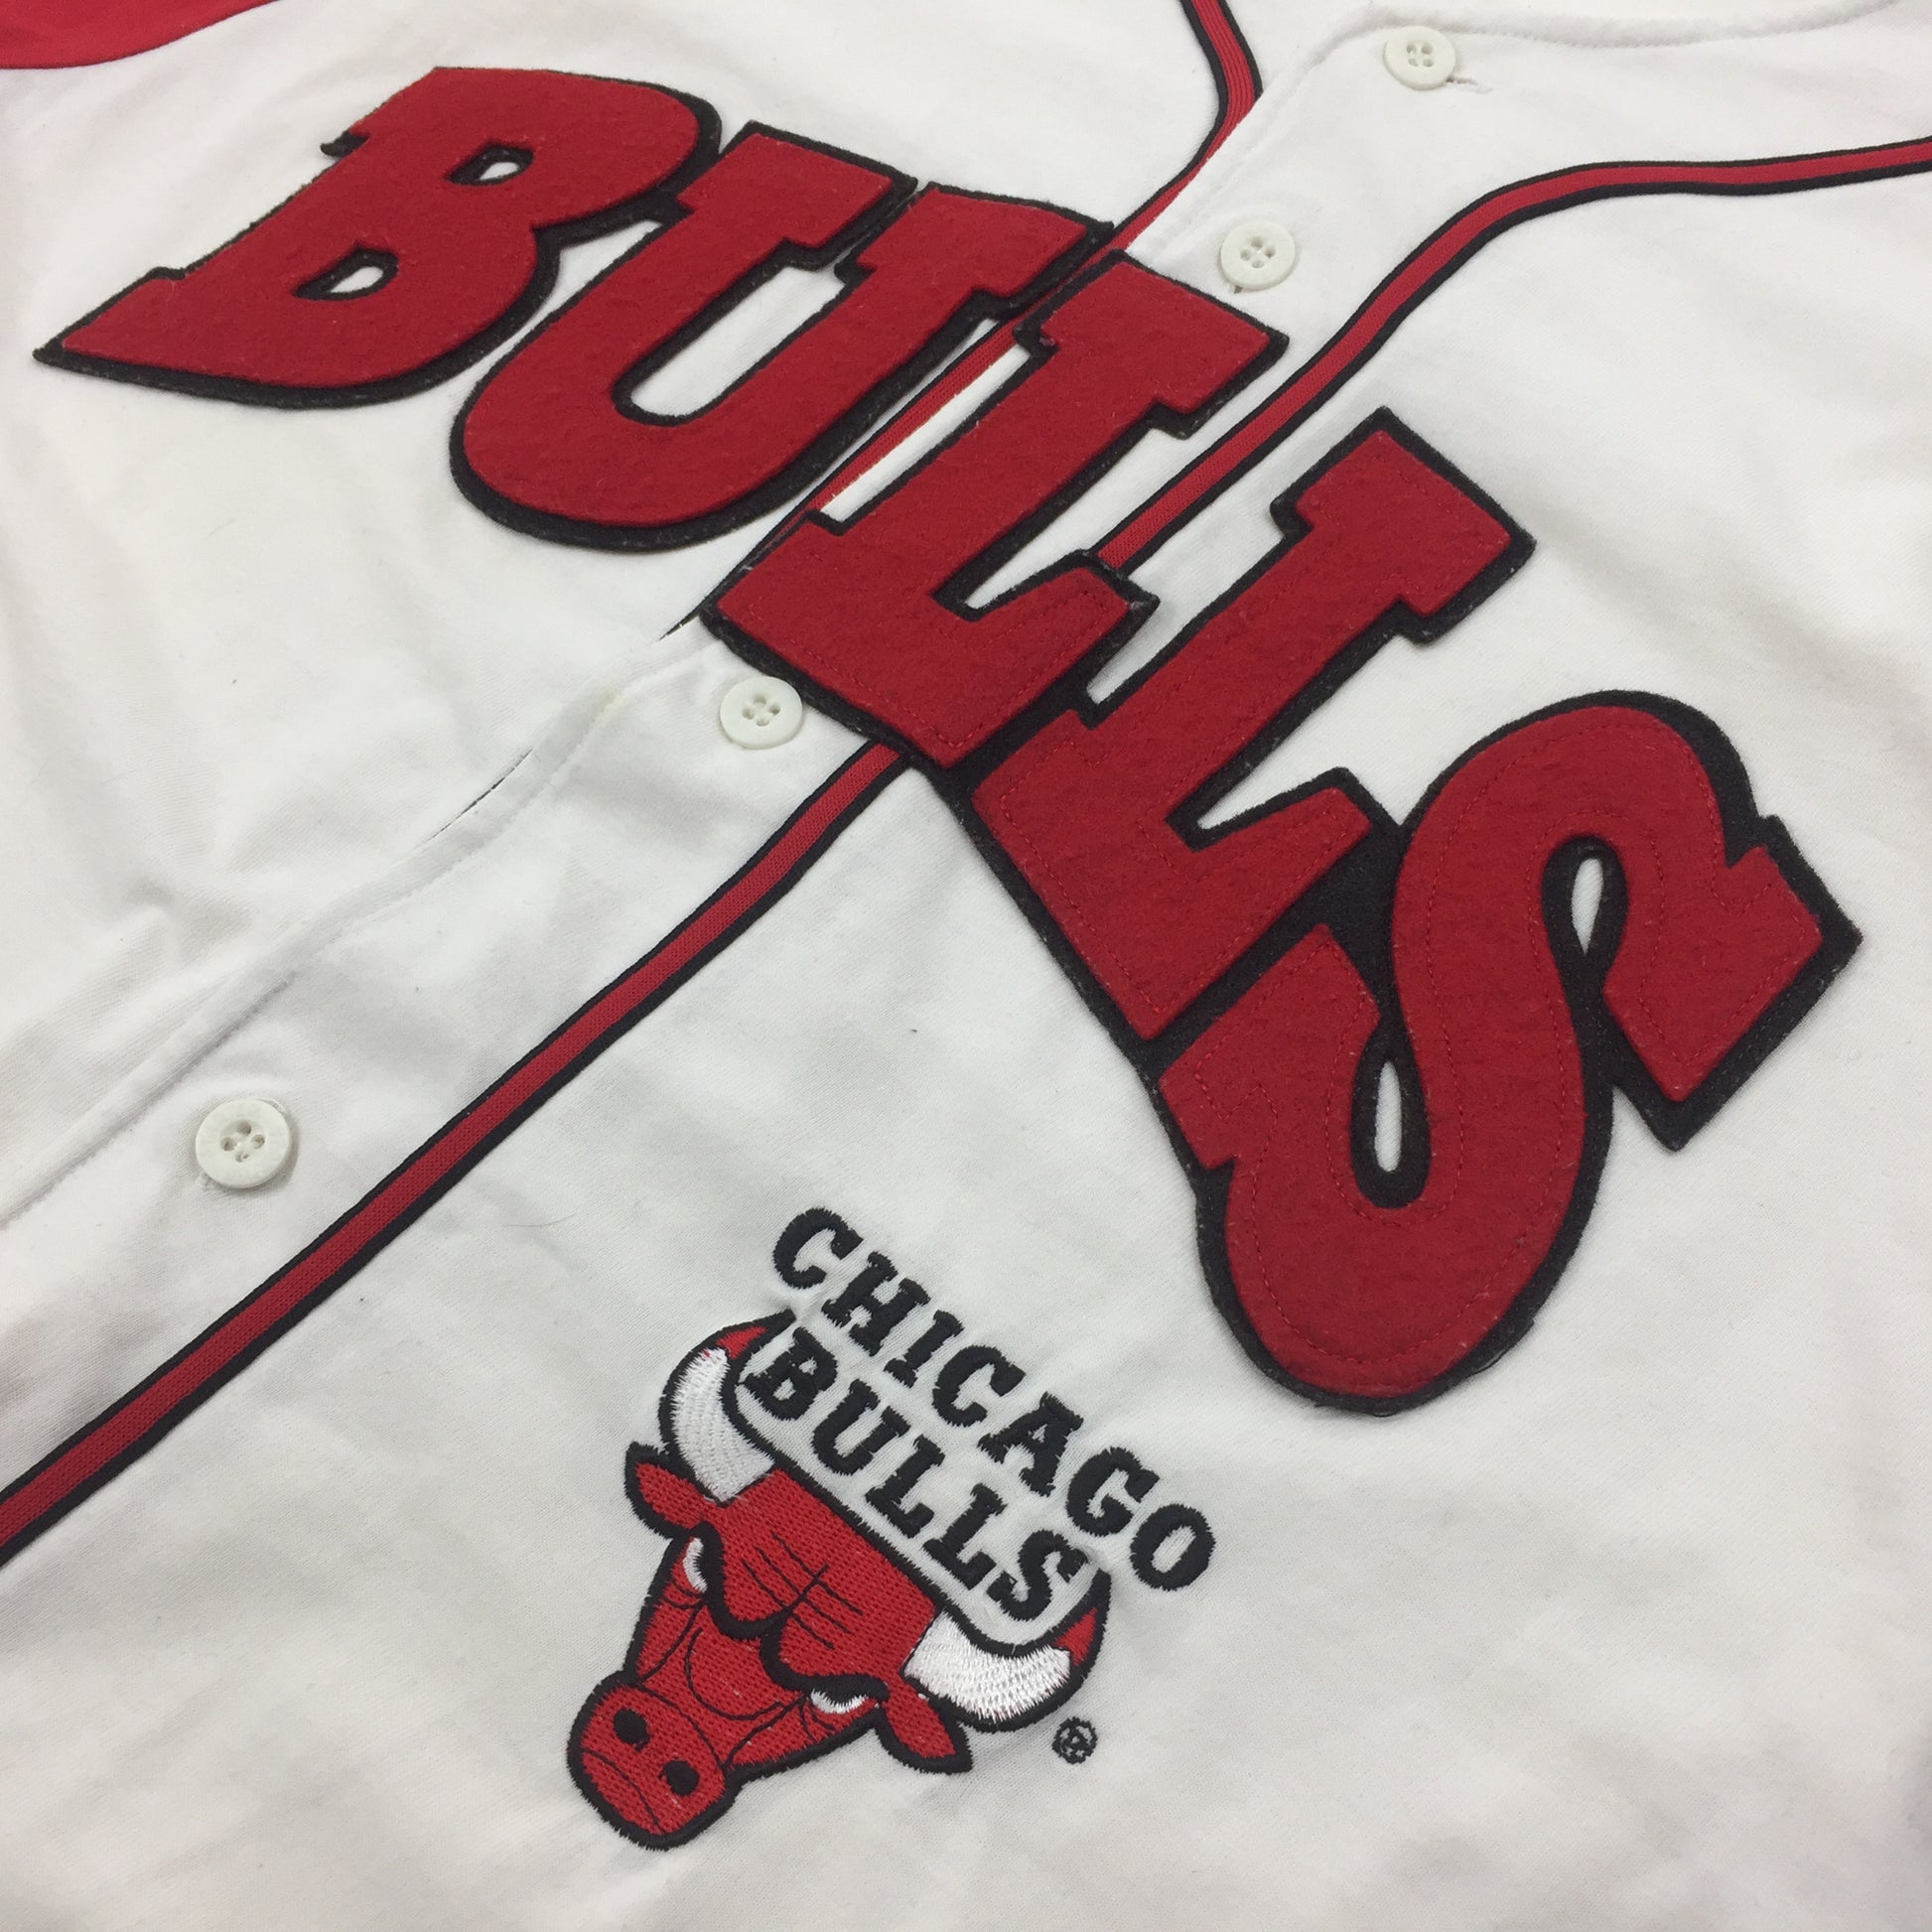 0593 Starter Vintage 90s Chicago Bulls Baseball Jersey – PAUL'S